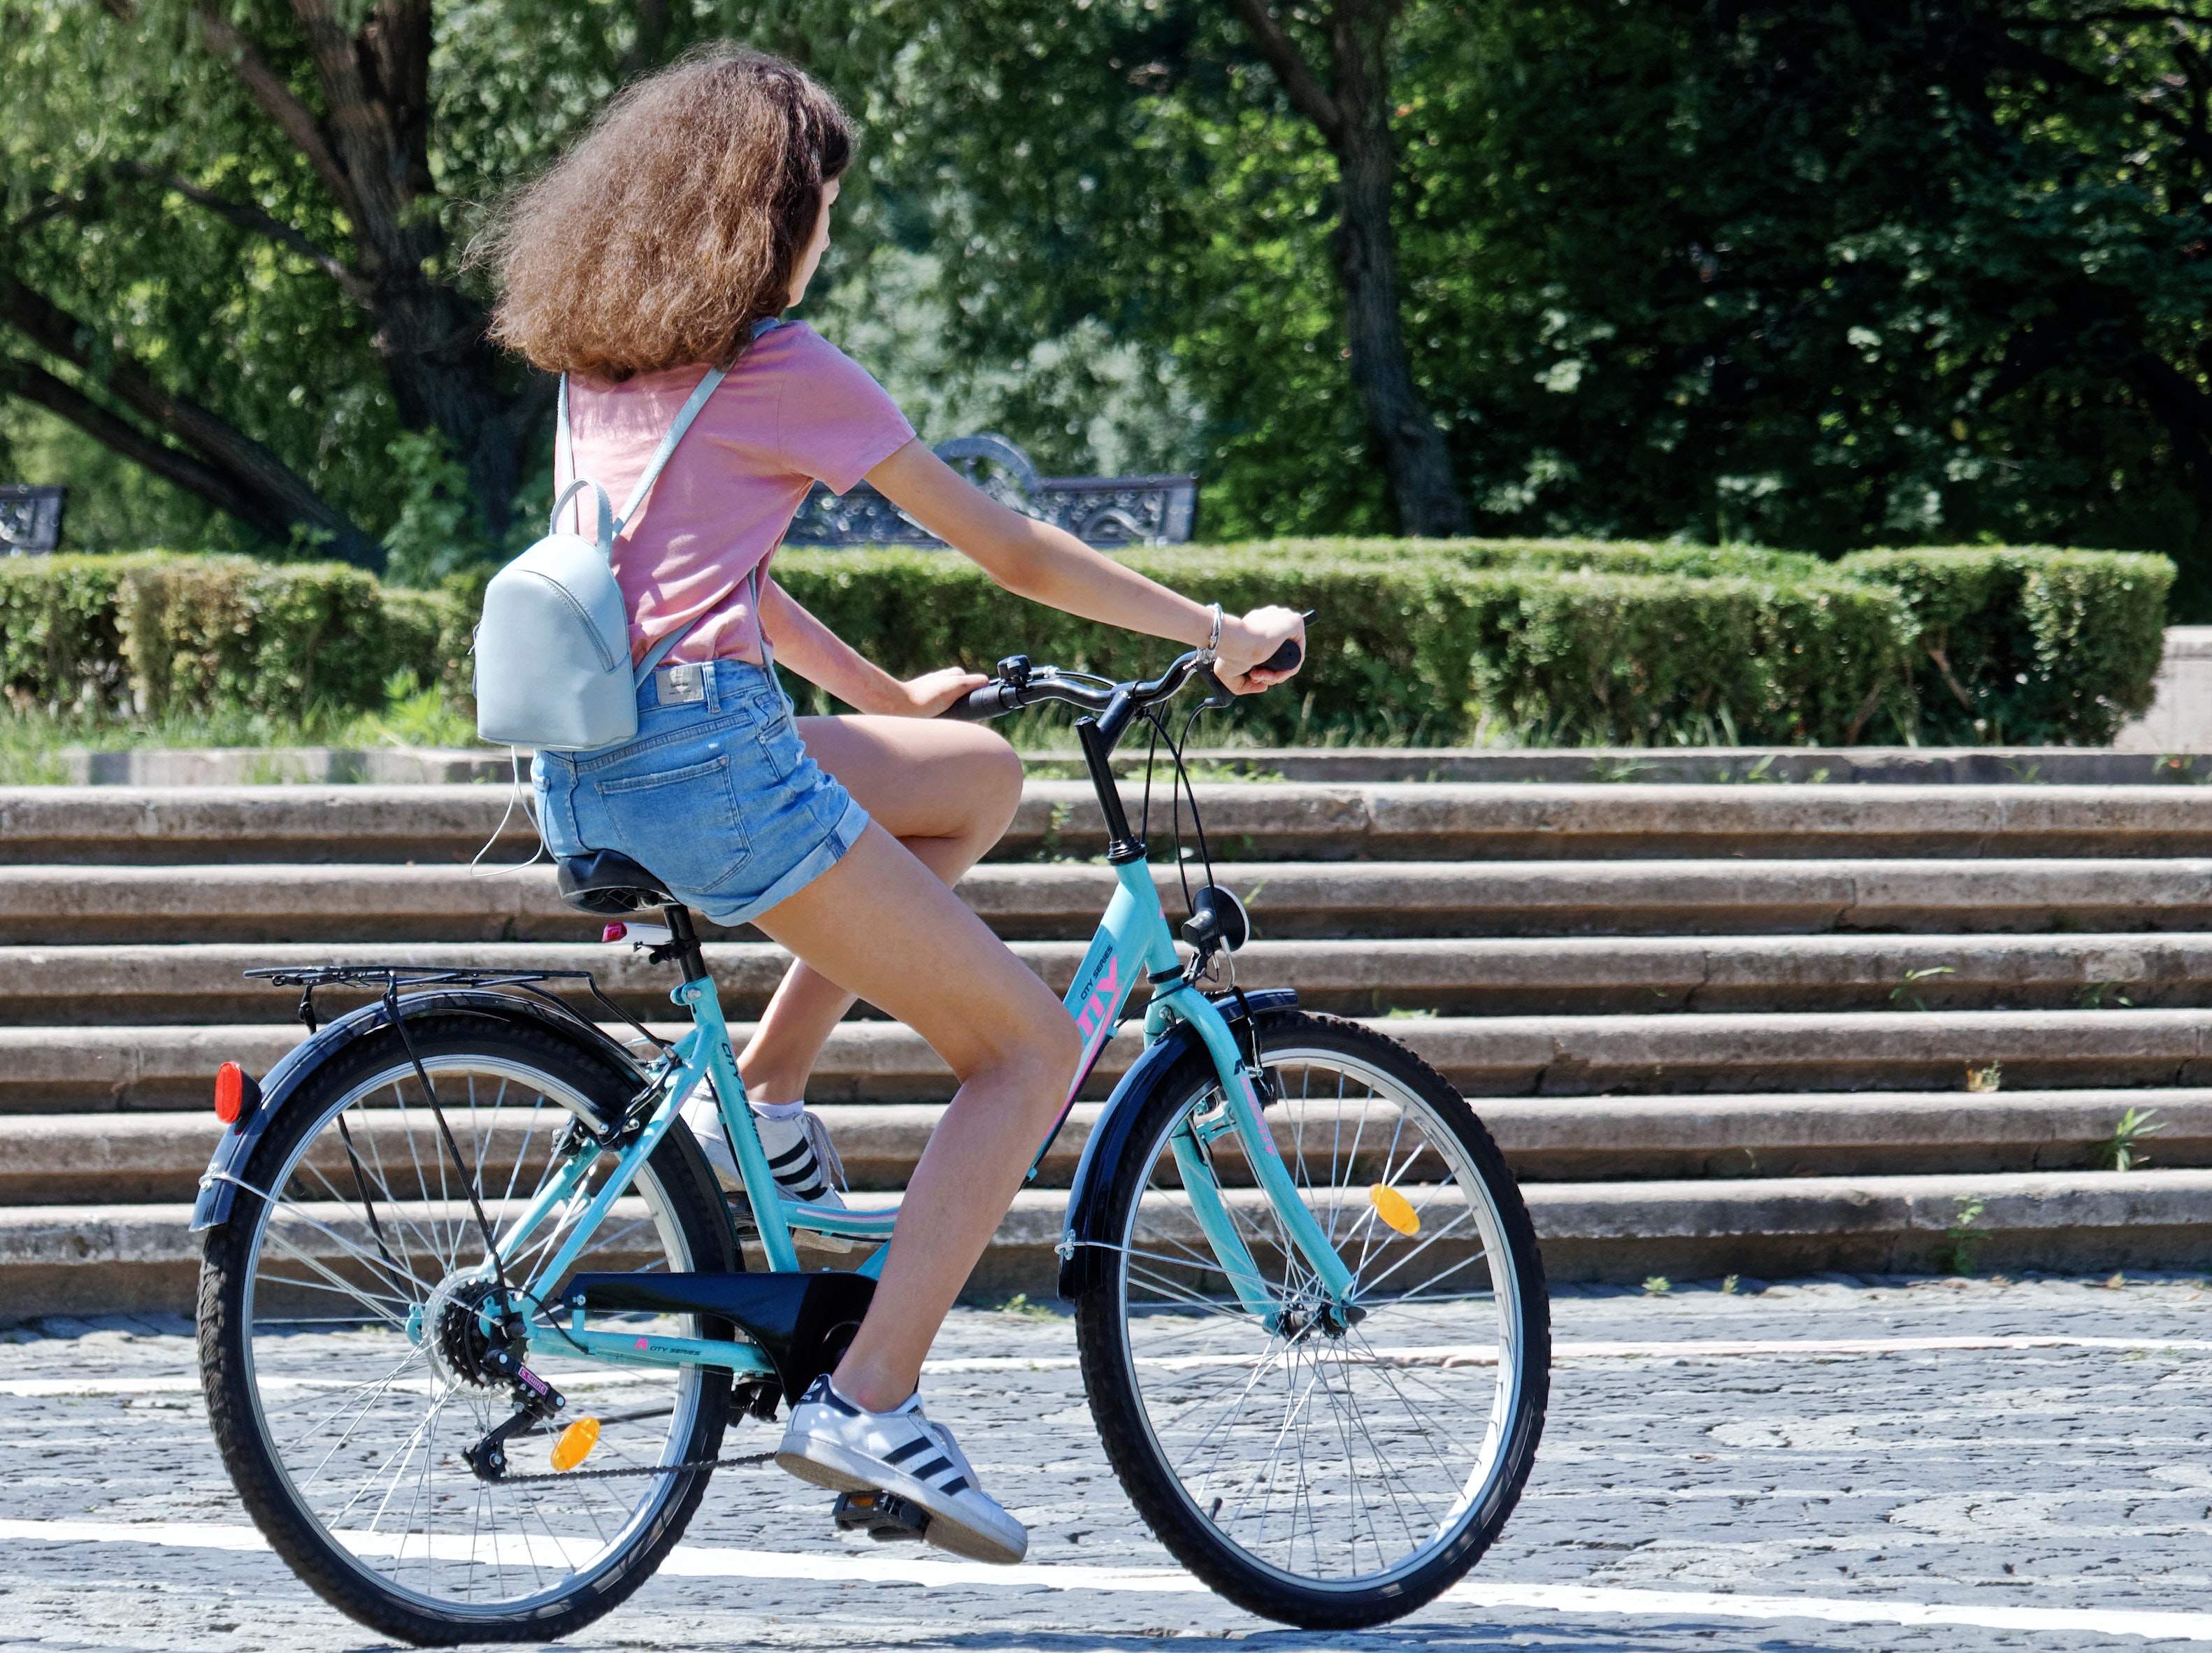 voorzien lavendel Blauw Op de fiets weer naar school? Check de fiets! - ZUID!